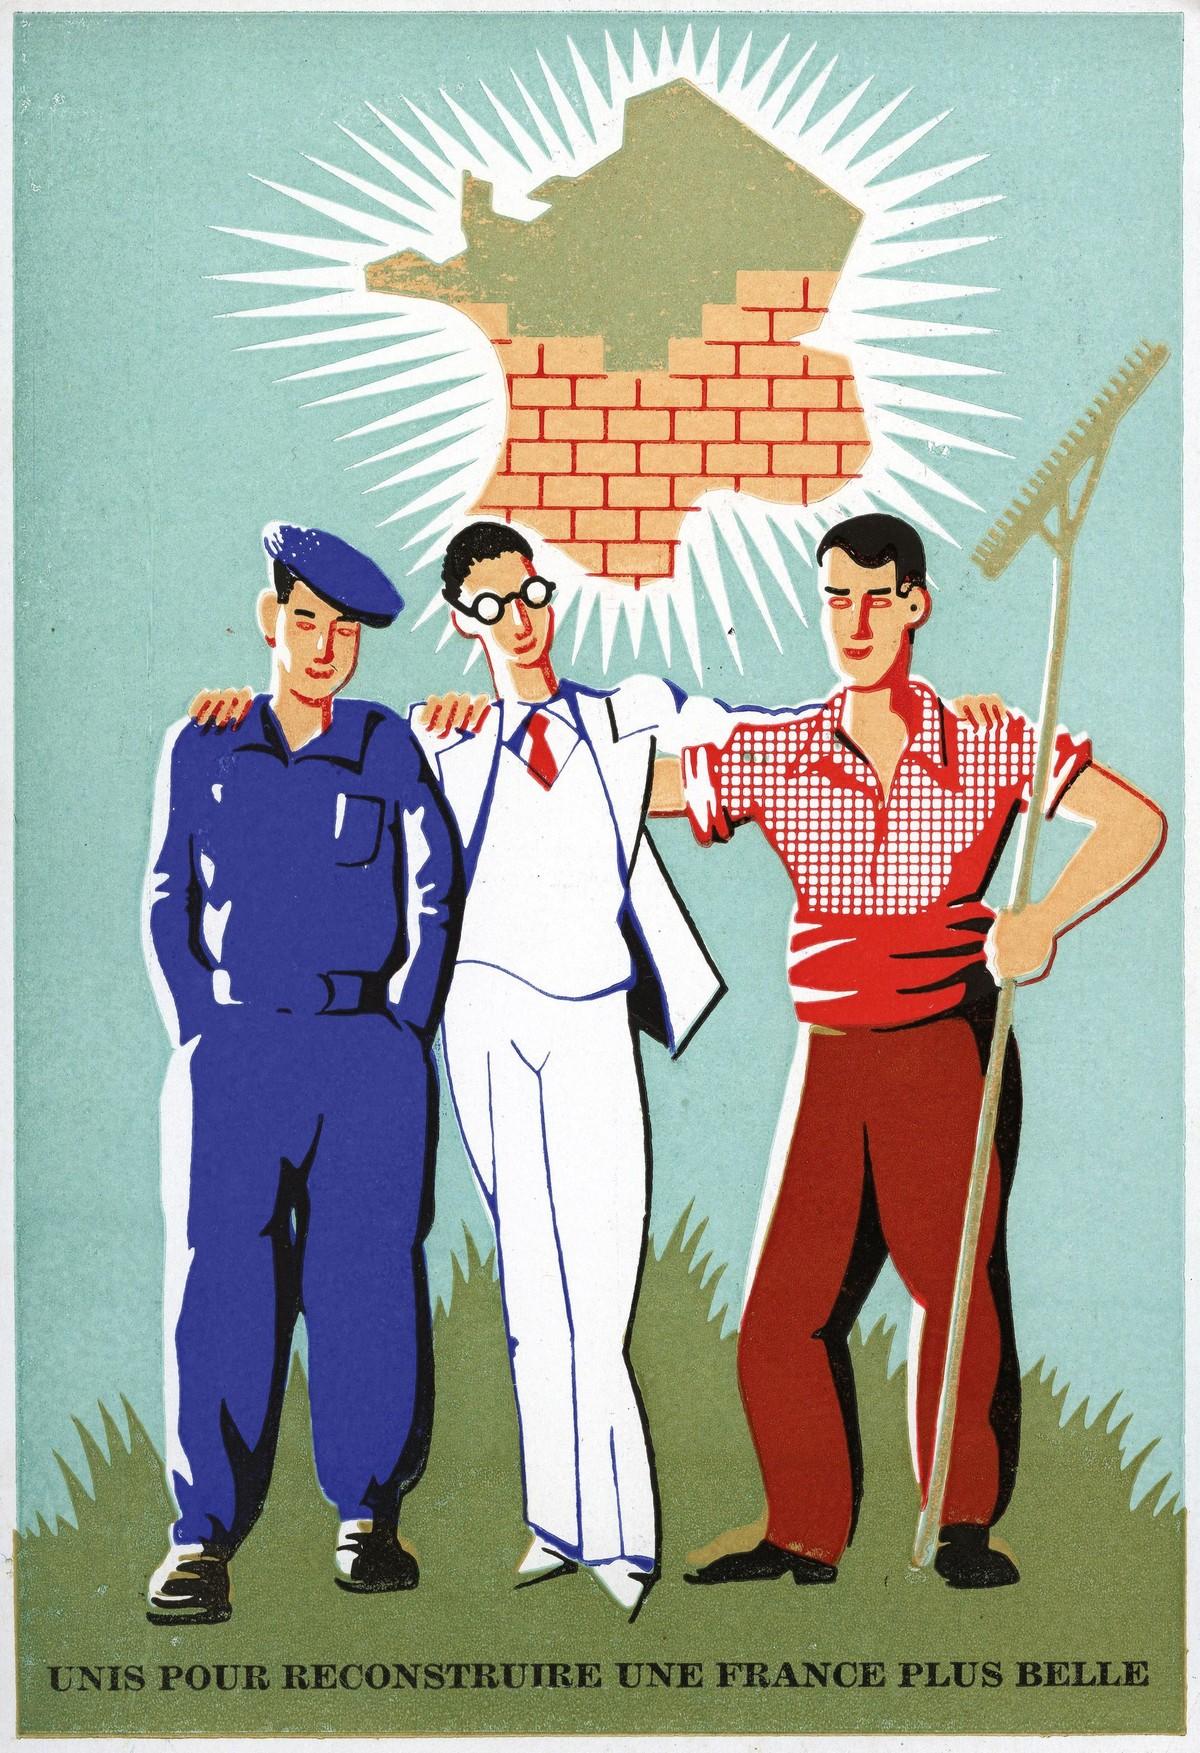 Un ouvrier (en bleu), un cadre (en col blanc) et un paysan (en rouge), unis pour la reconstruction, carte postale, 1945.